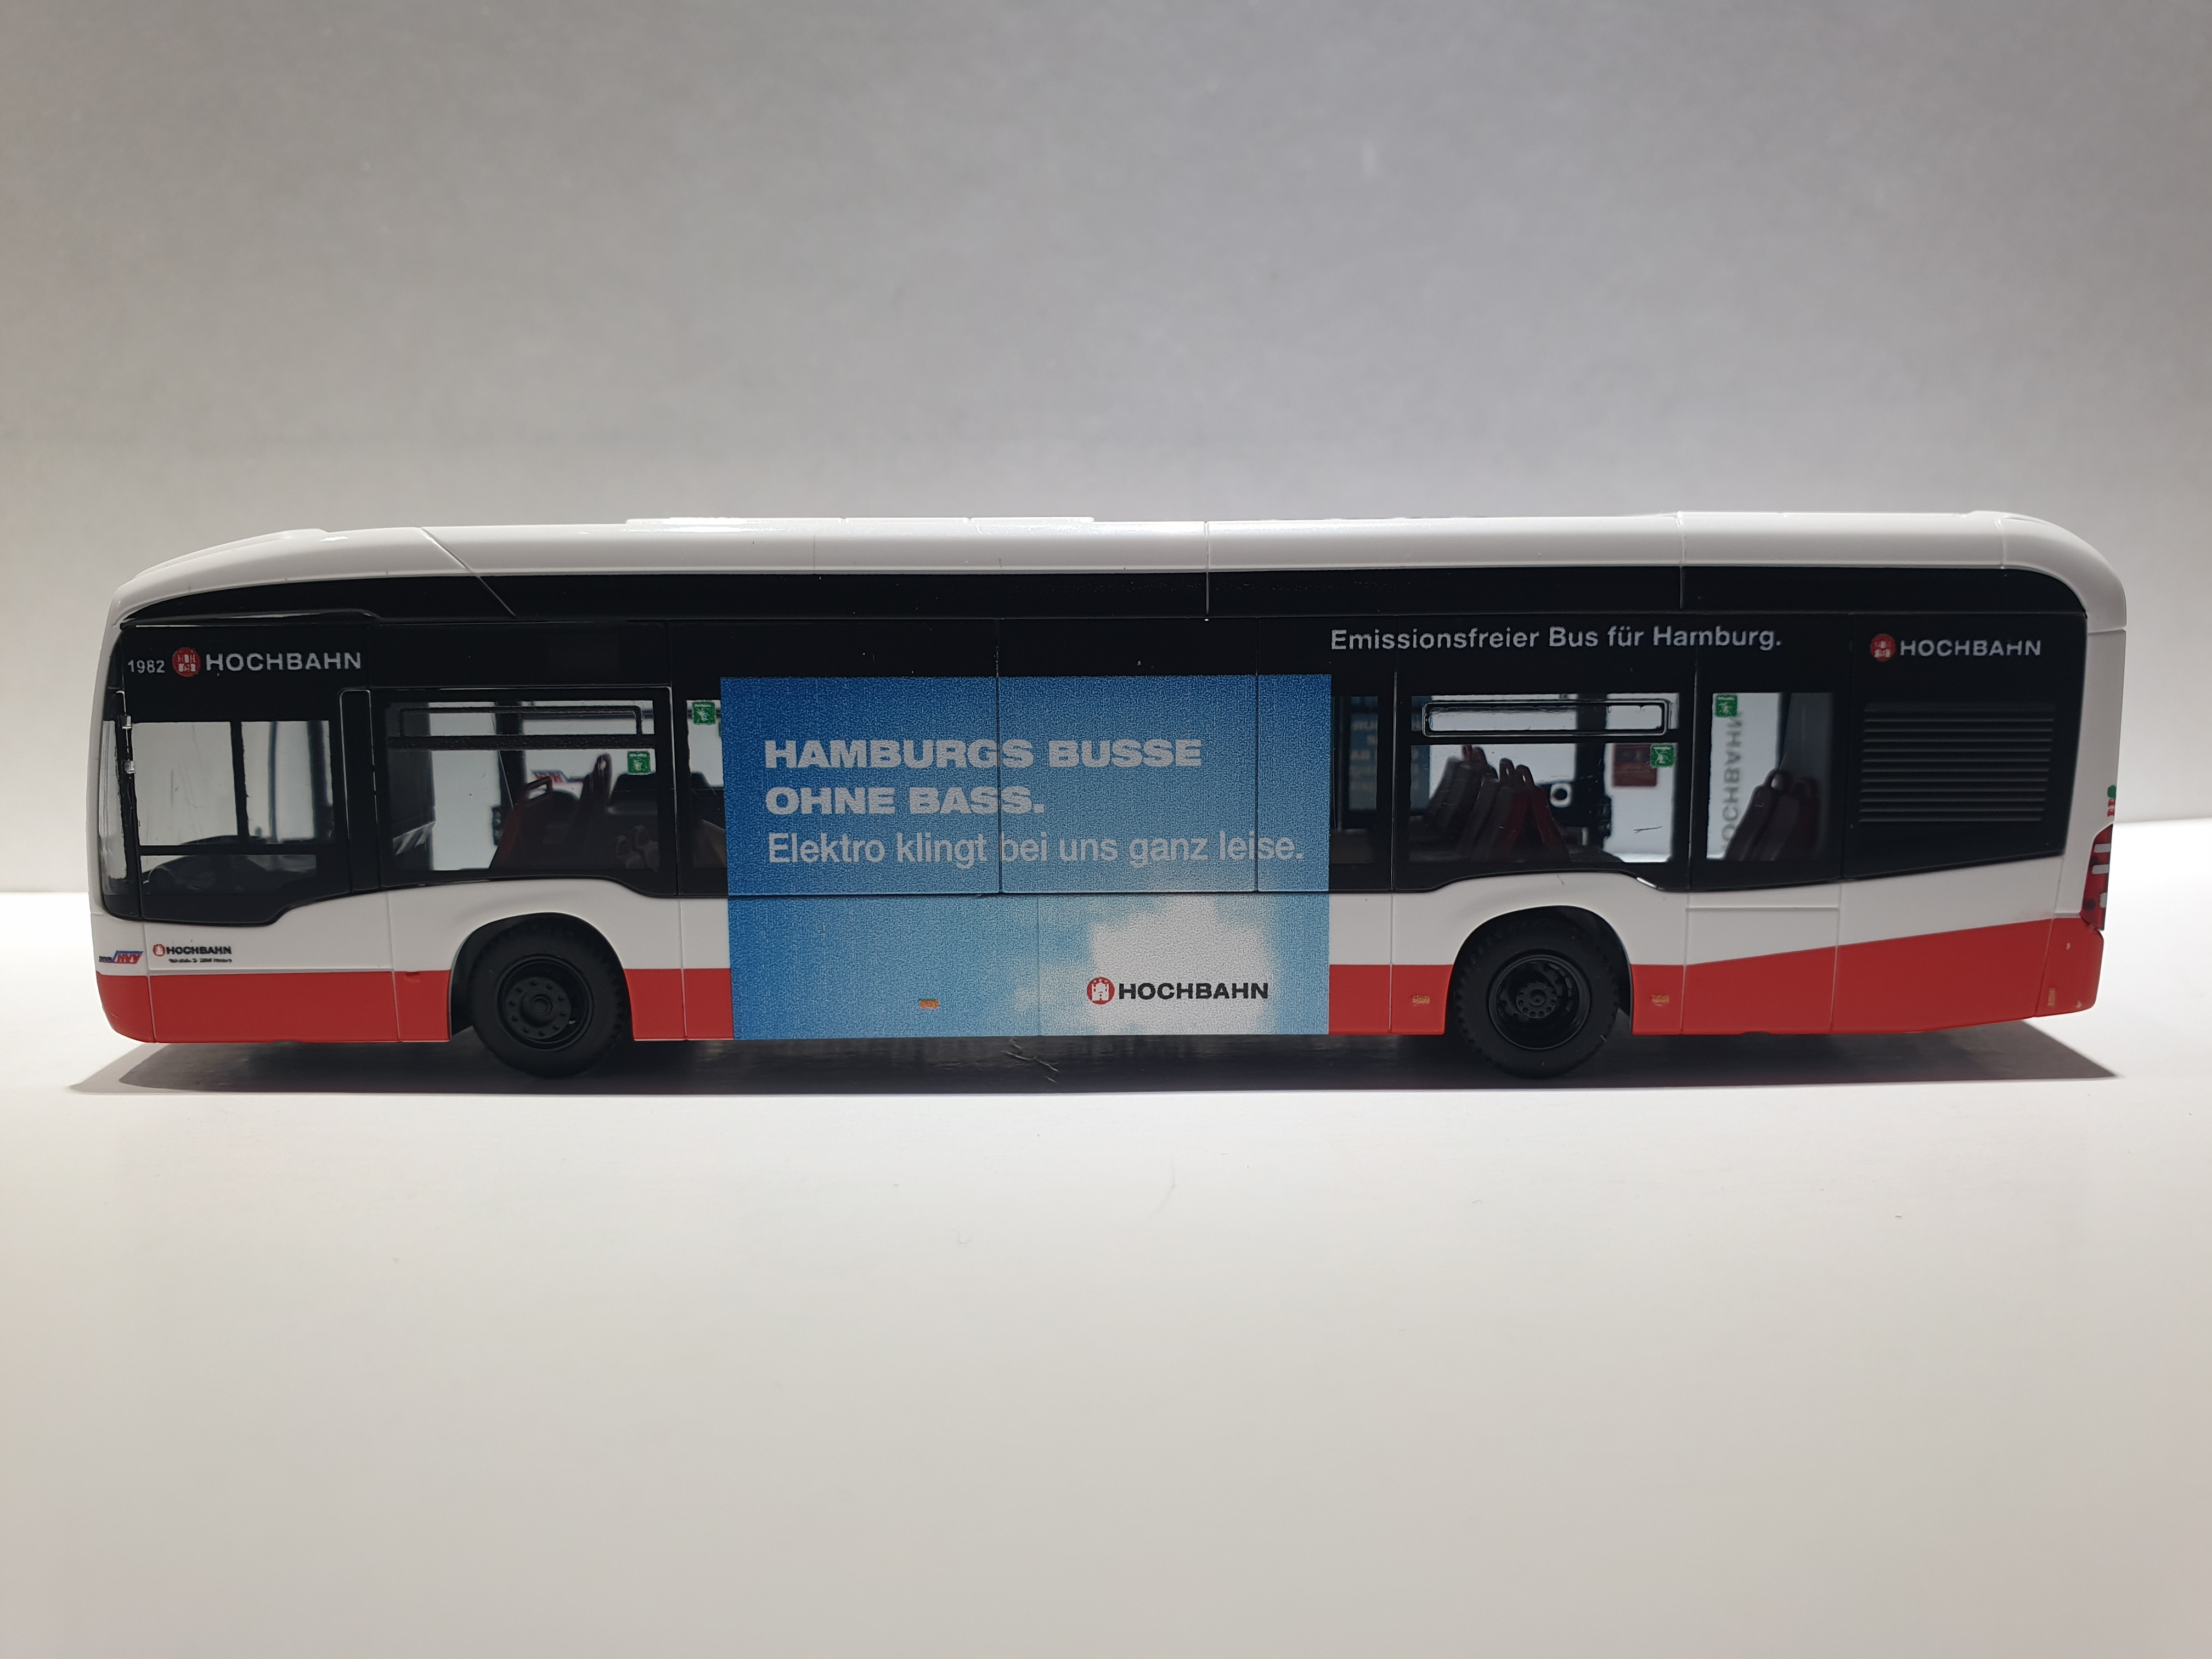 Rietze MB eCitaro 2015 Hamburger Hochbahn Edition 9 mit Hochbahnwerbung " Hamburgs Busse ohne Bass " - Wagennummer 1982- Zielanzeige Linie 292 Hamburg Airport 